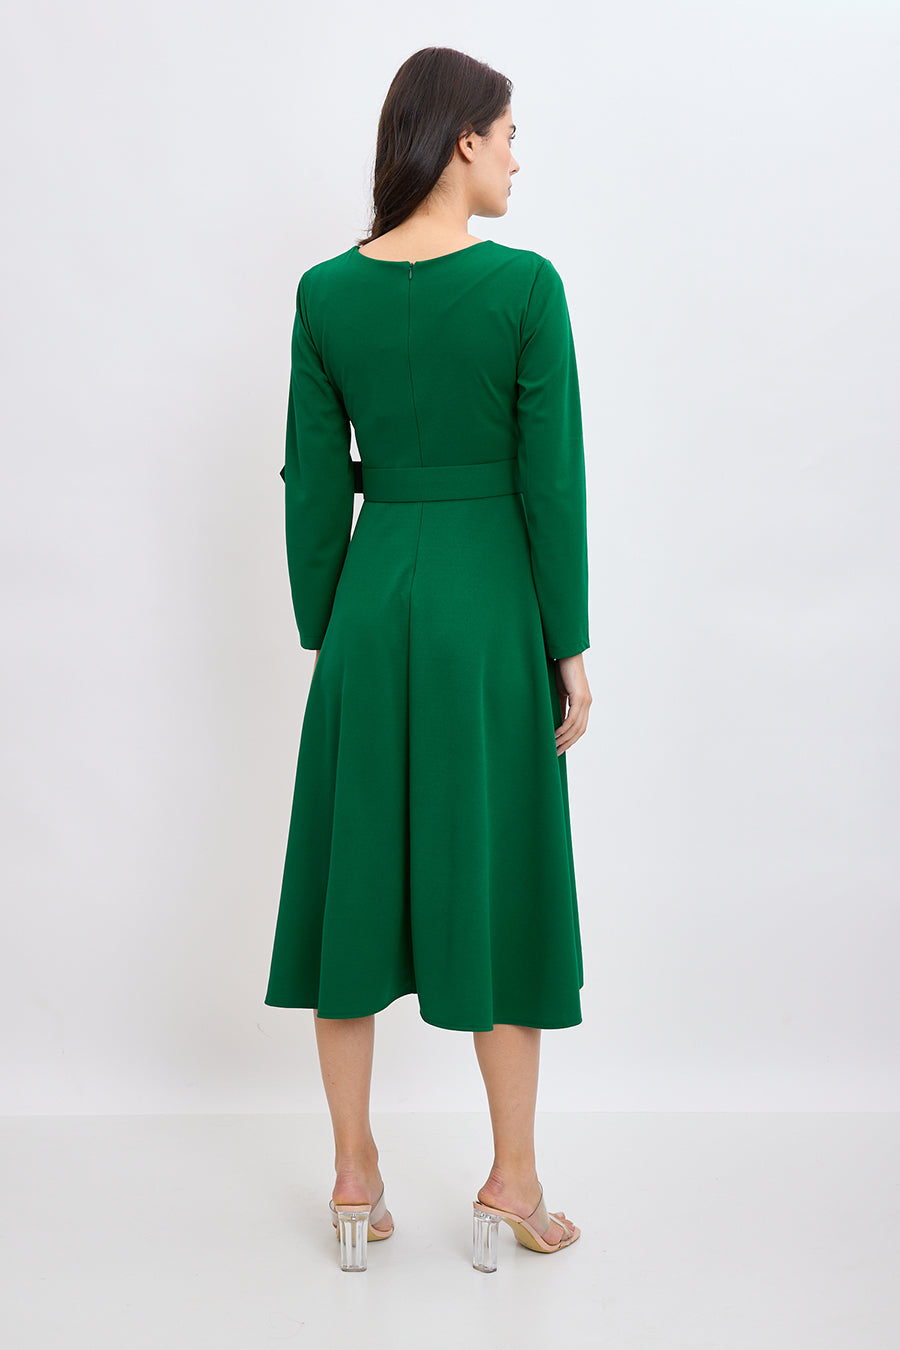 Γυναικείο φόρεμα Fatima, Πράσινο 3